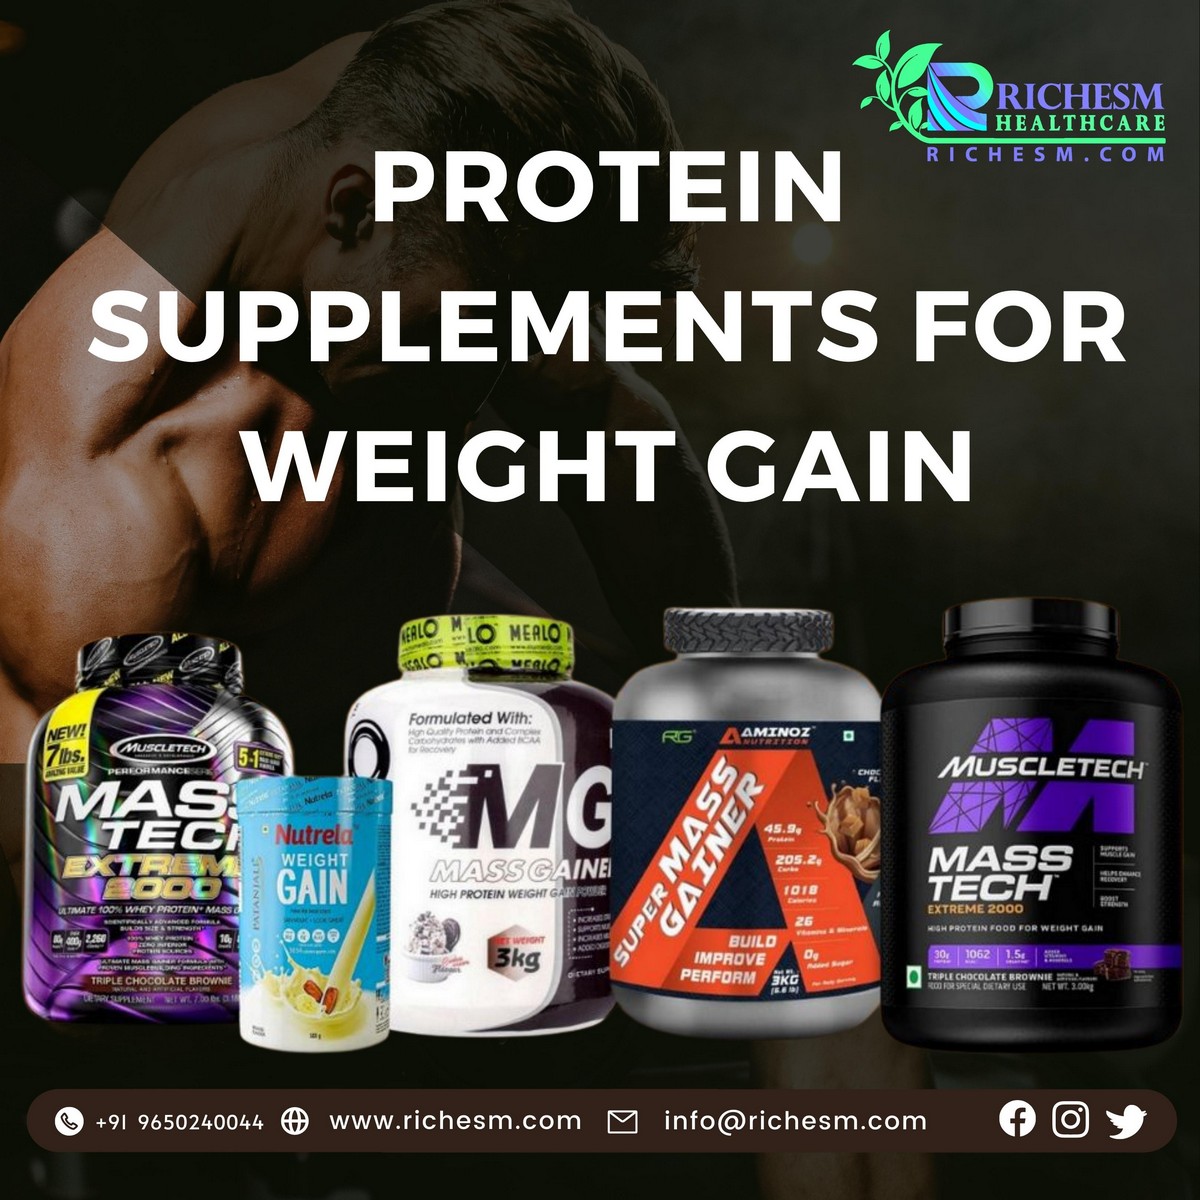 Protein supplements